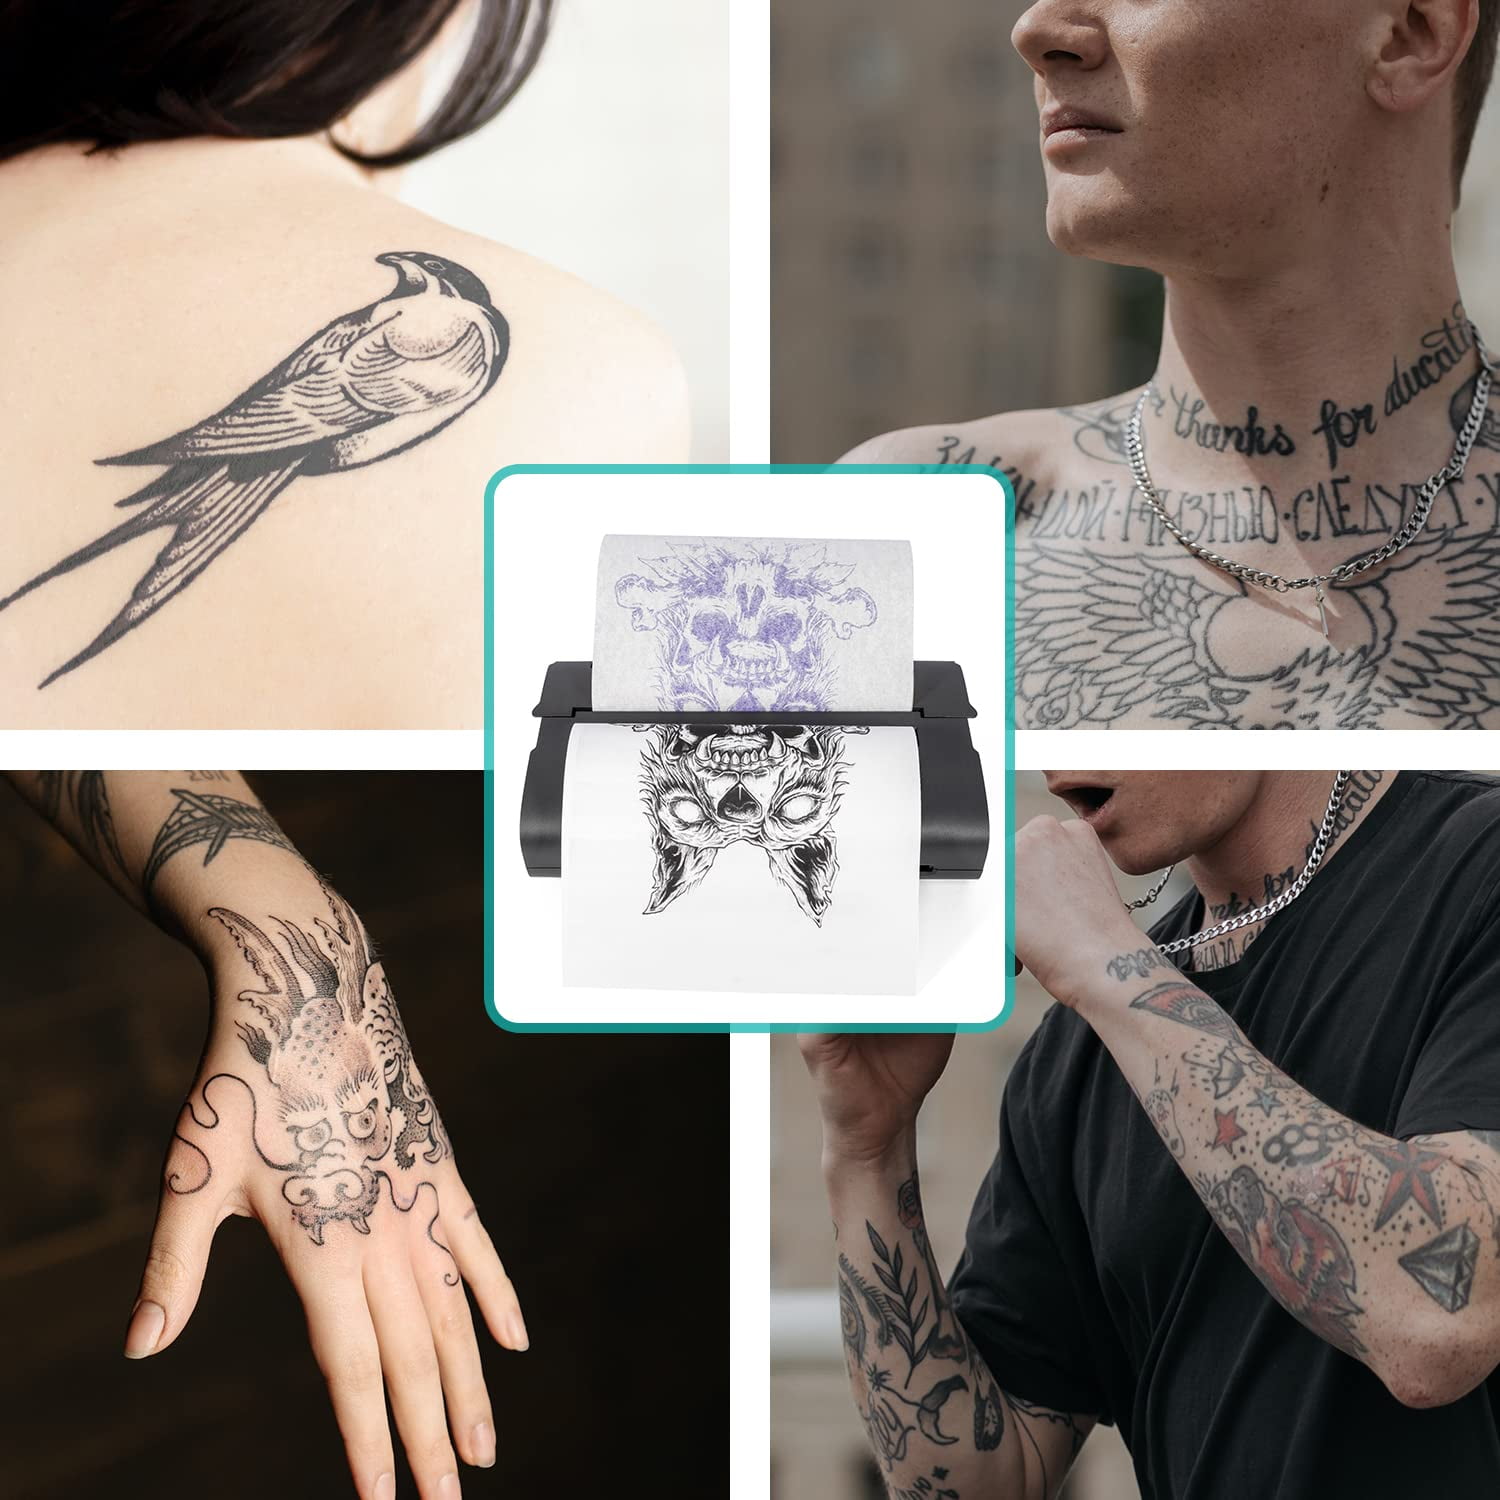 Life Basis Tattoo Stencil Transfer Machine Thermal Tattoo Kit